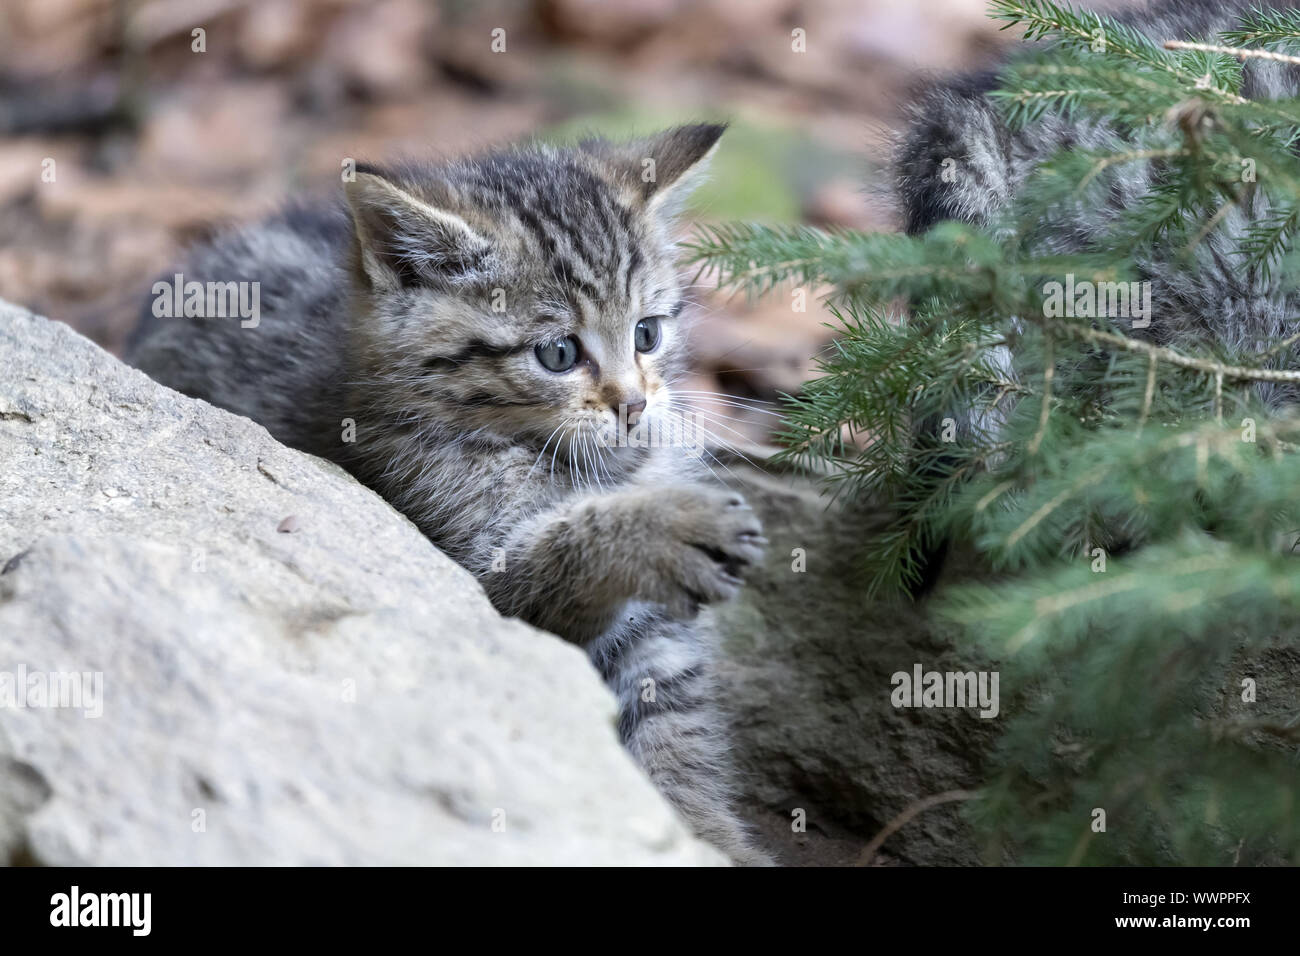 Wildcat, comune gatto selvatico Foto Stock